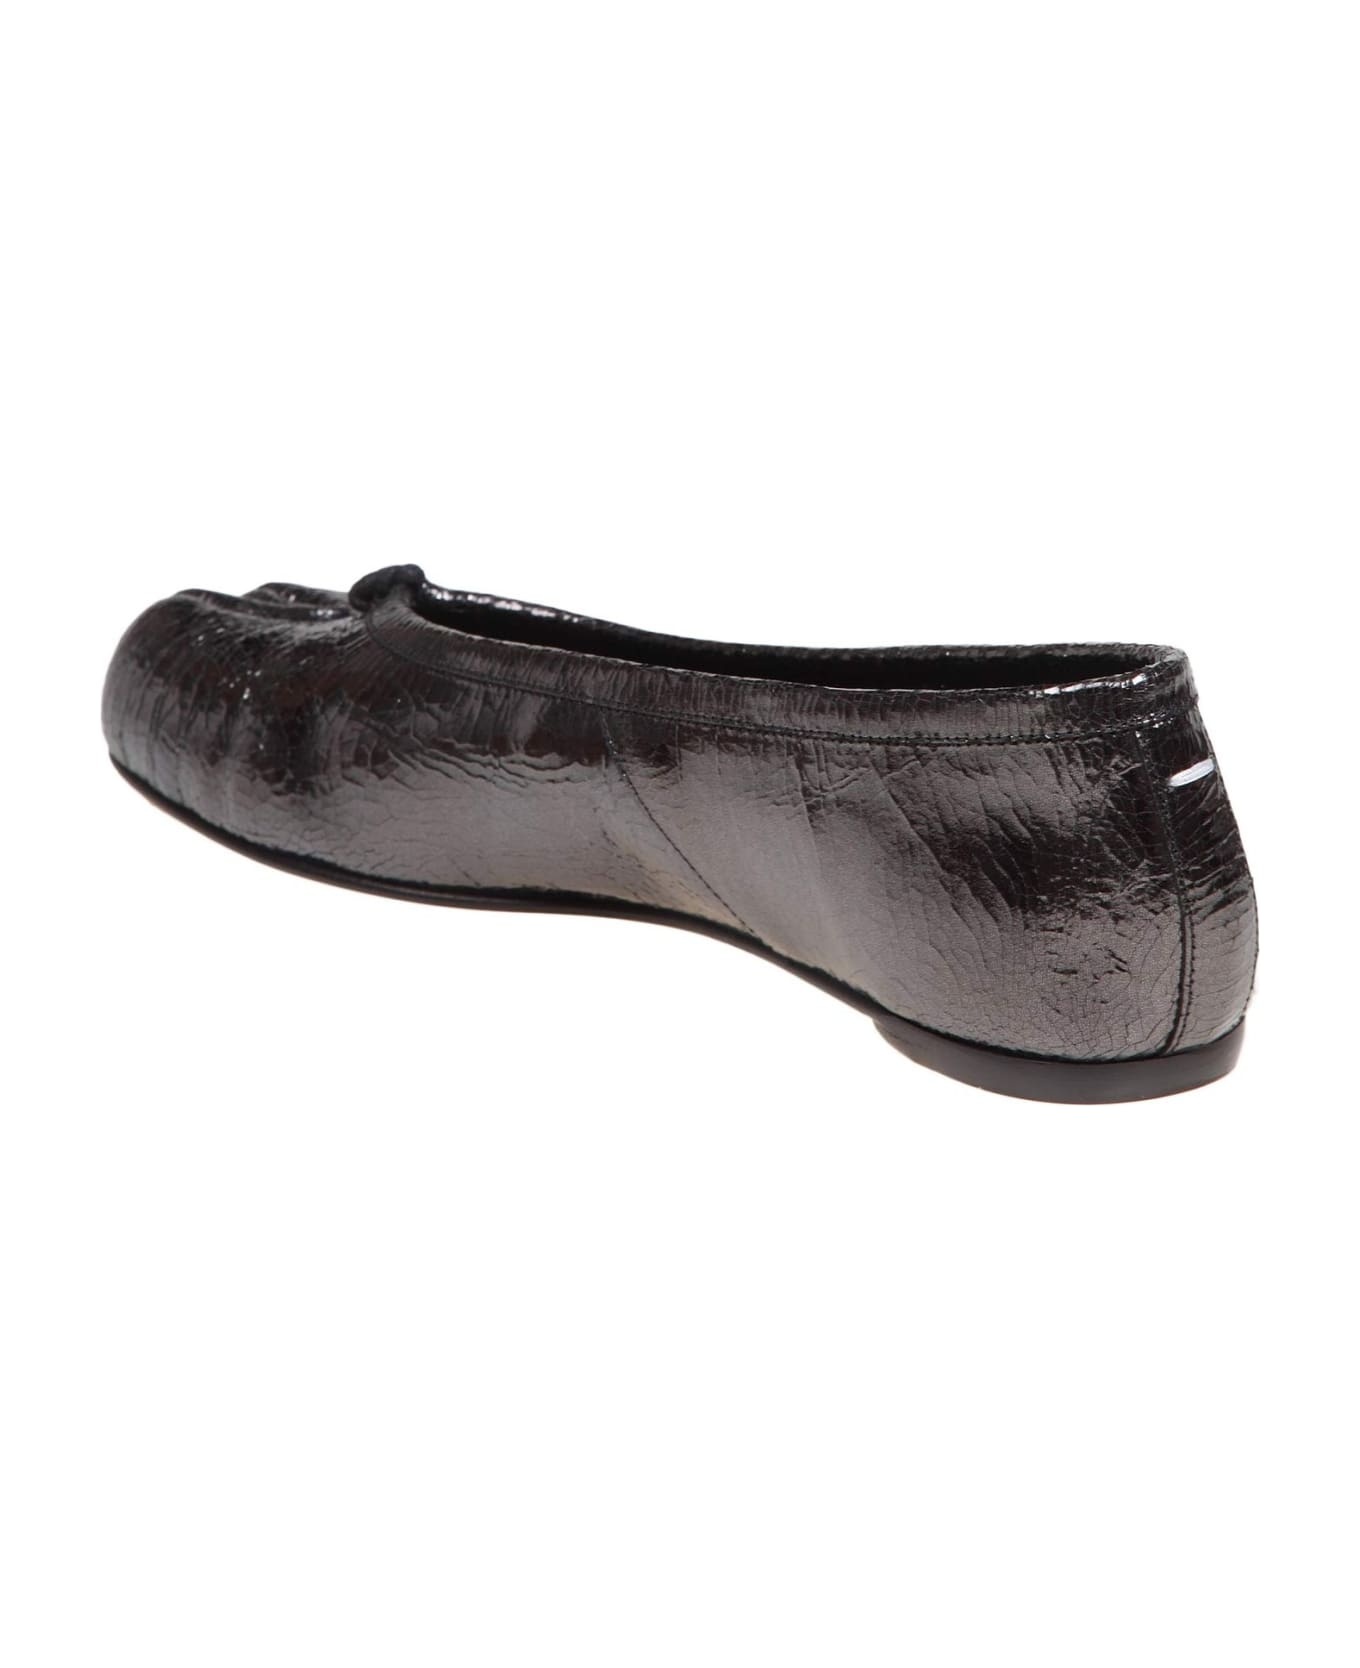 'ballet' Black Shiny Leather Ballet Flats - 4